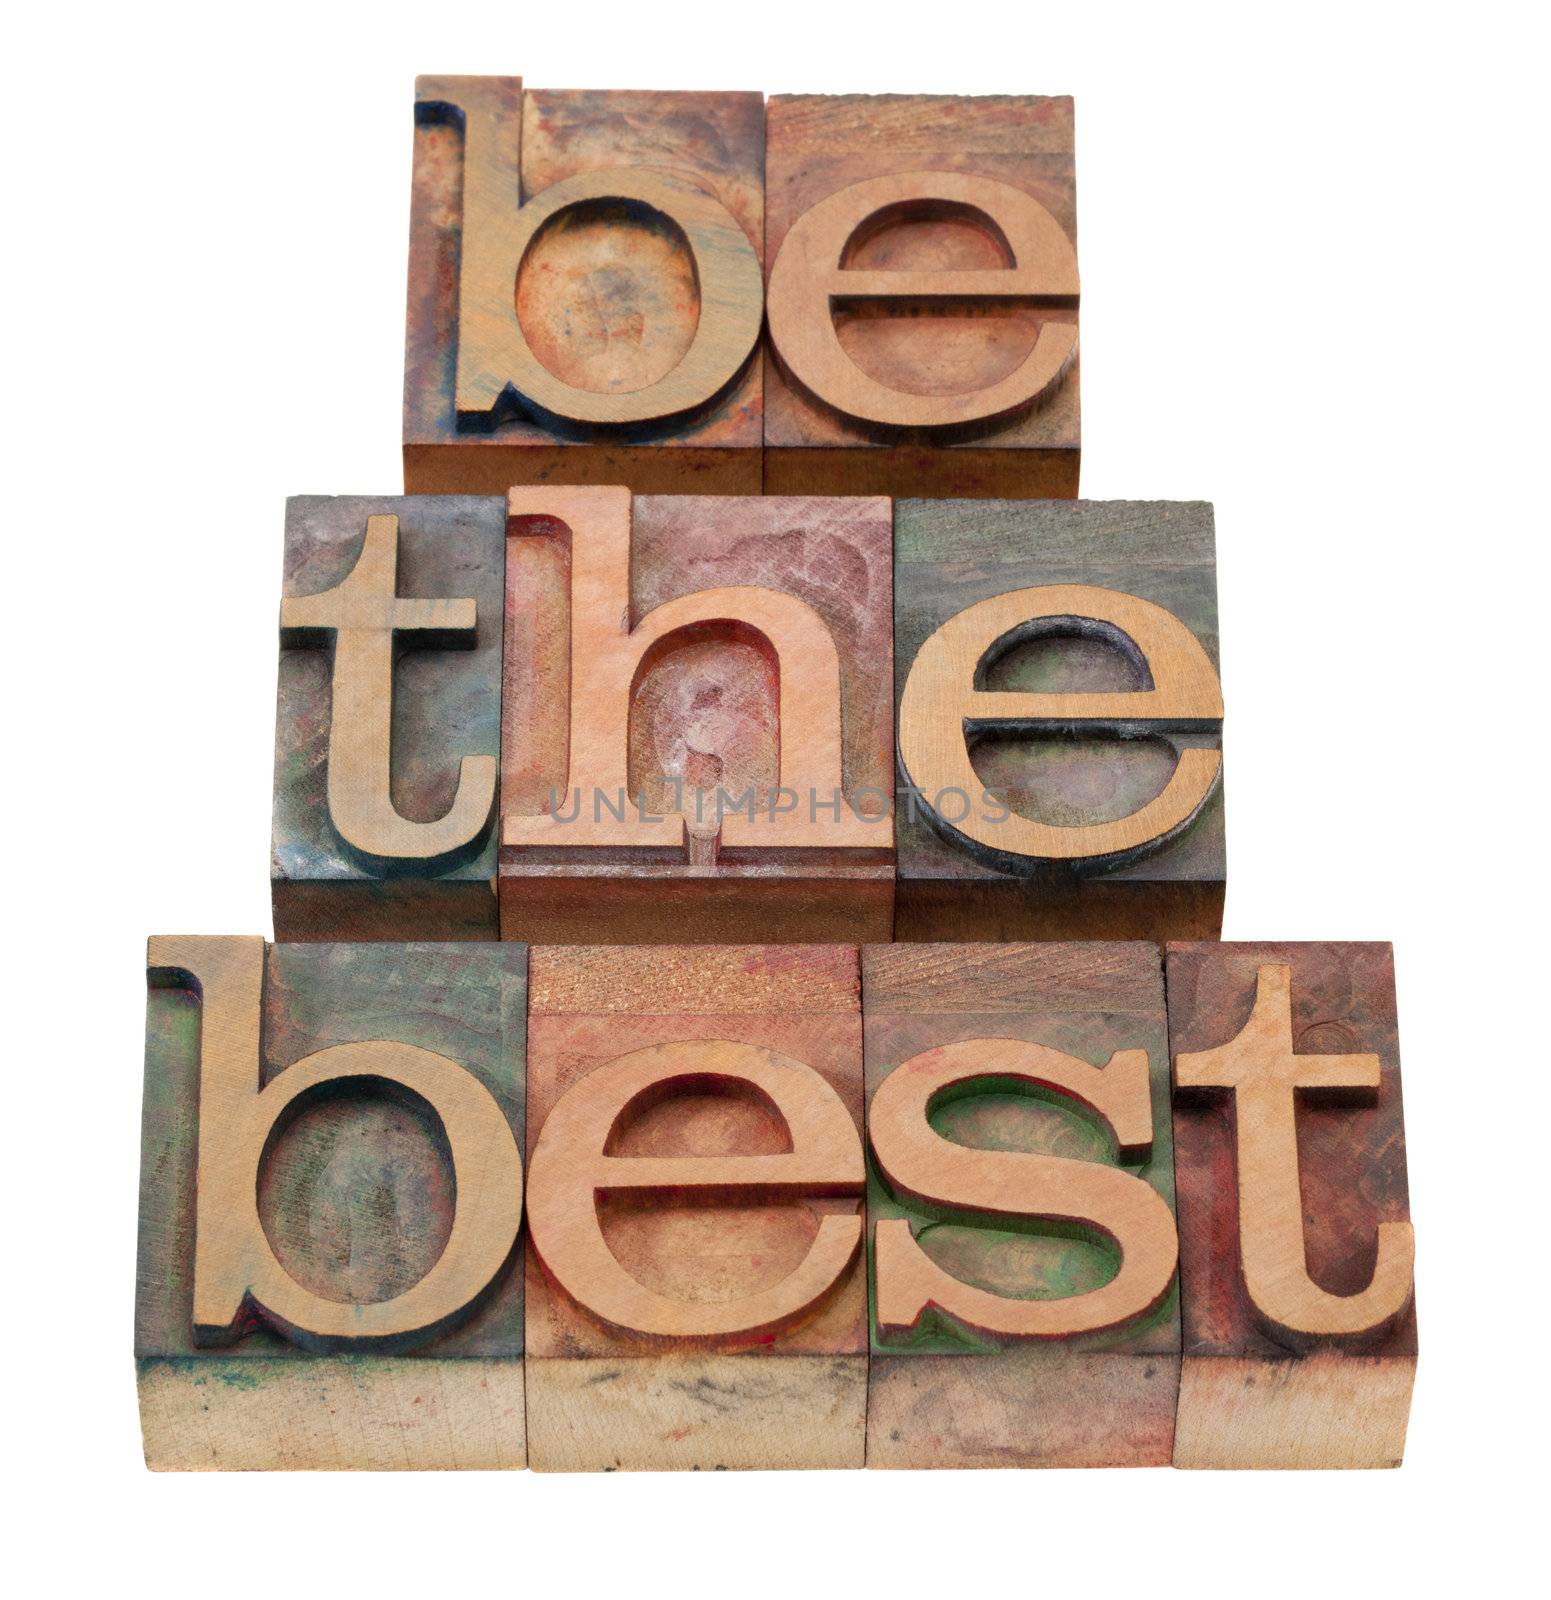 be the best - slogan in letterpress type by PixelsAway